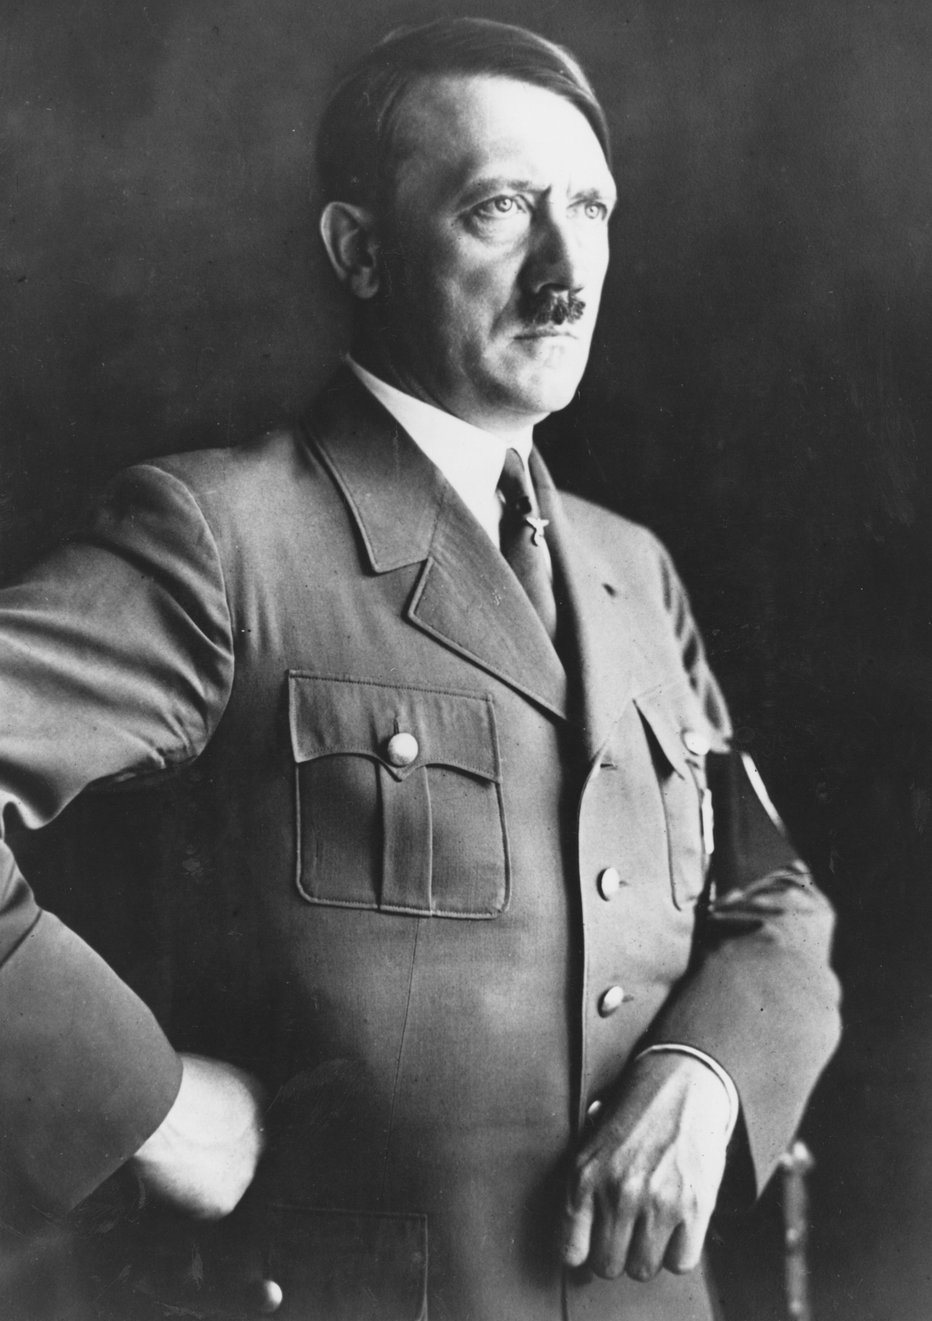 Fotografija: Adolf Hitler naj bi čutil spolno privlačnost do svojega namestnika FOTO: Getty Images